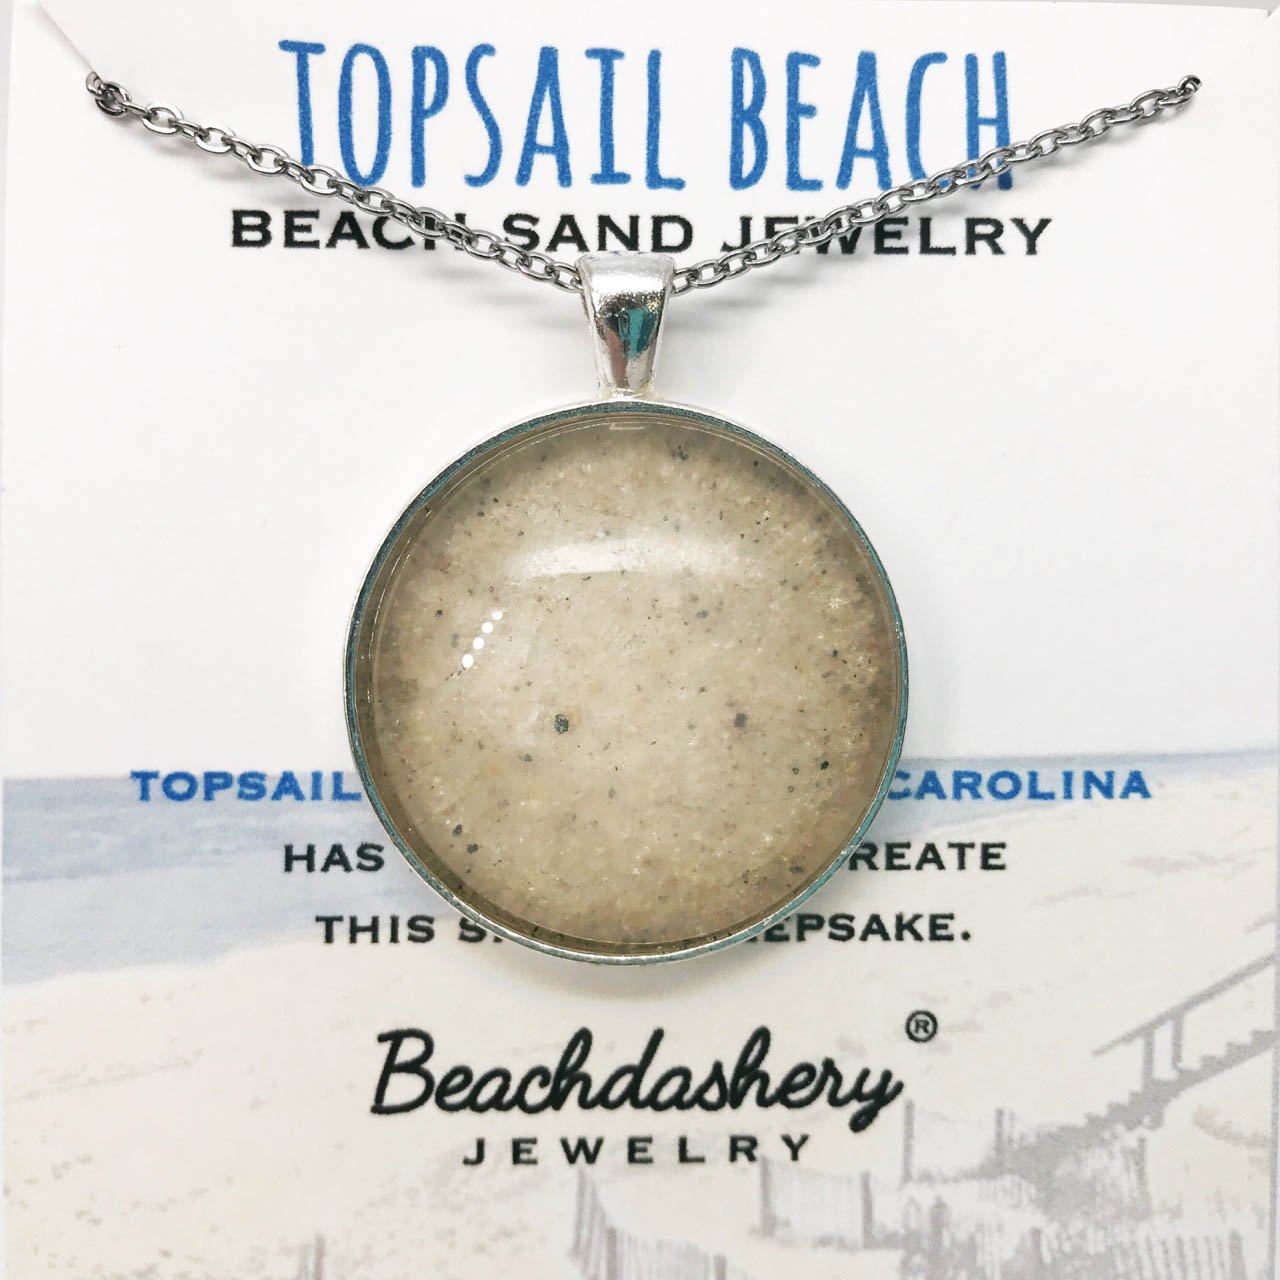 Topsail Beach North Carolina Sand Jewelry Beachdashery